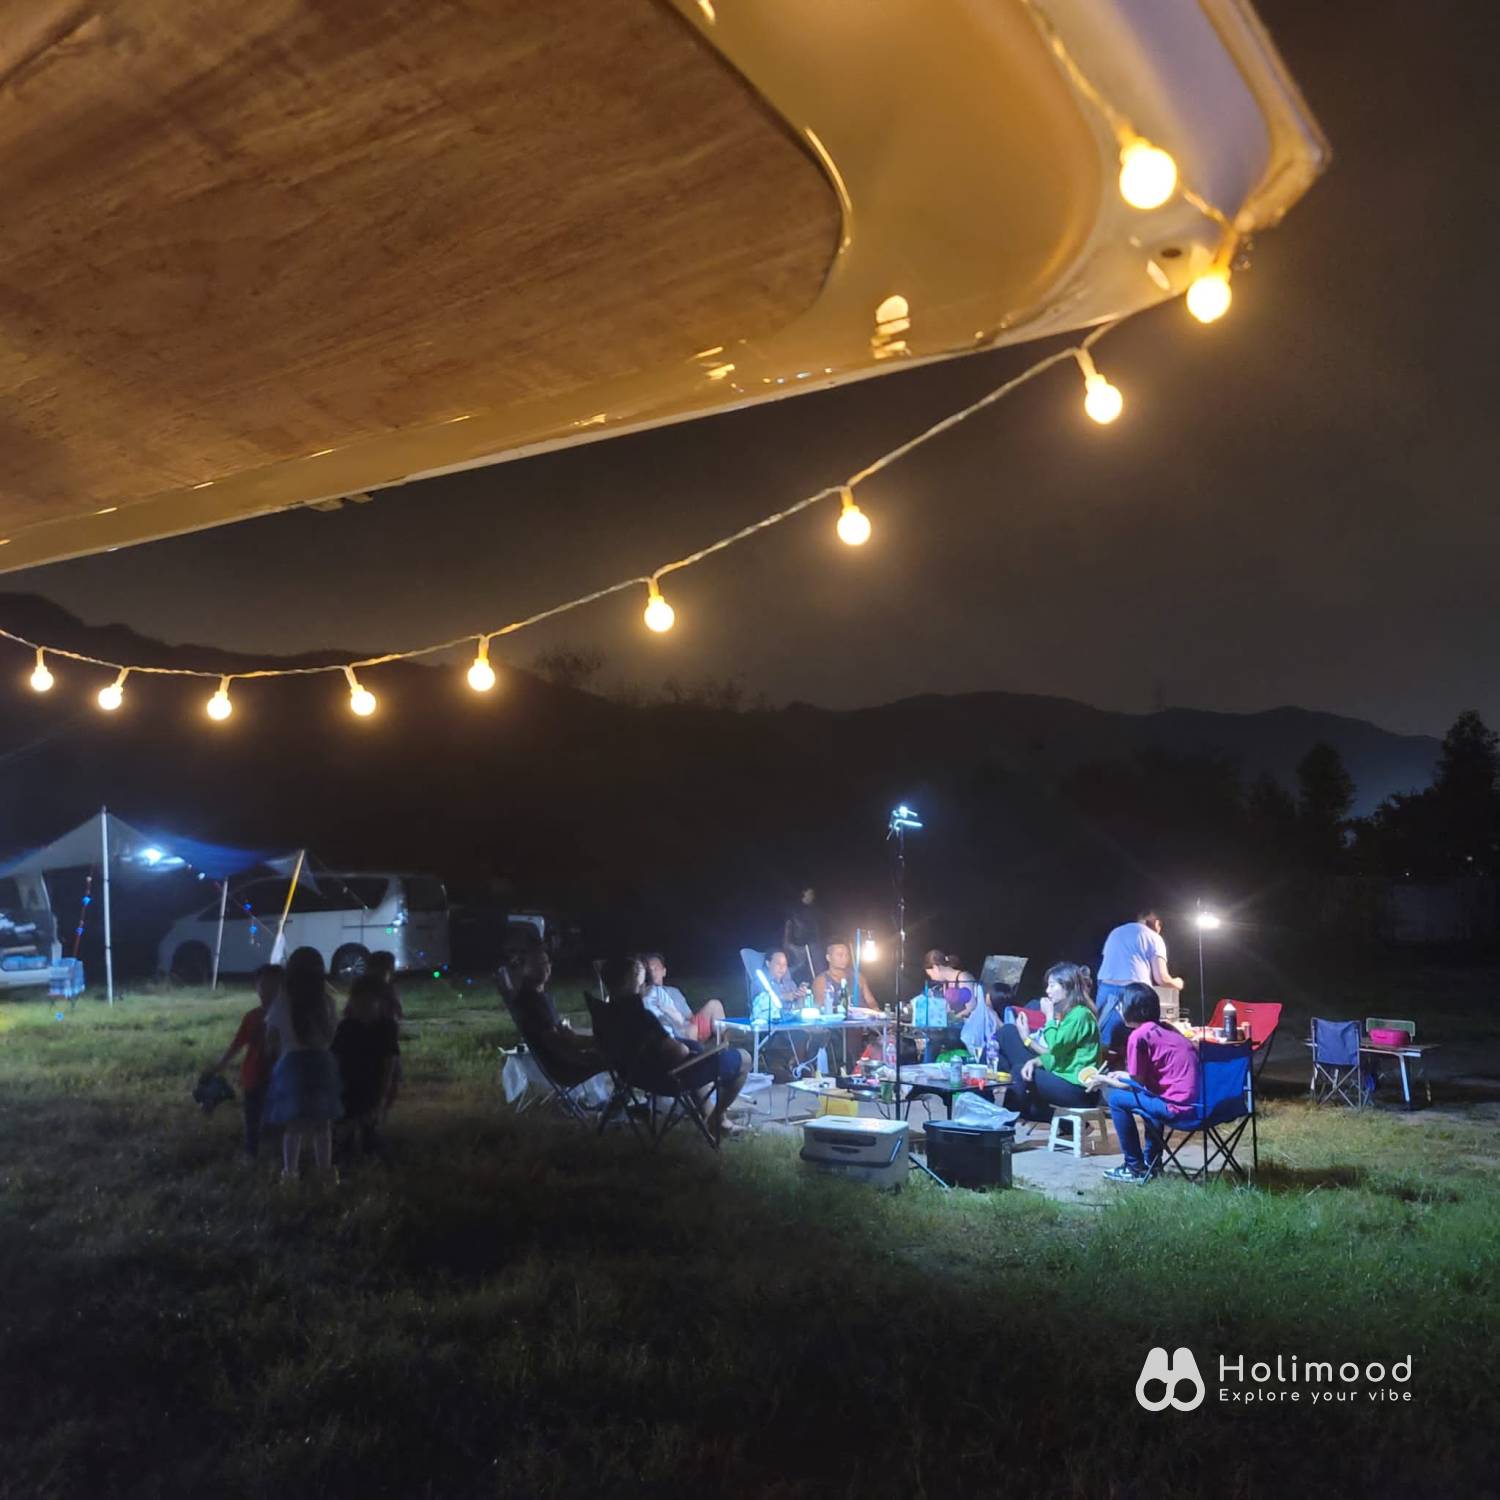 綠行鳥 - 大棠Car Camping + Glamping & 紅葉營地 【大棠露營體驗】 自攜營帳 6